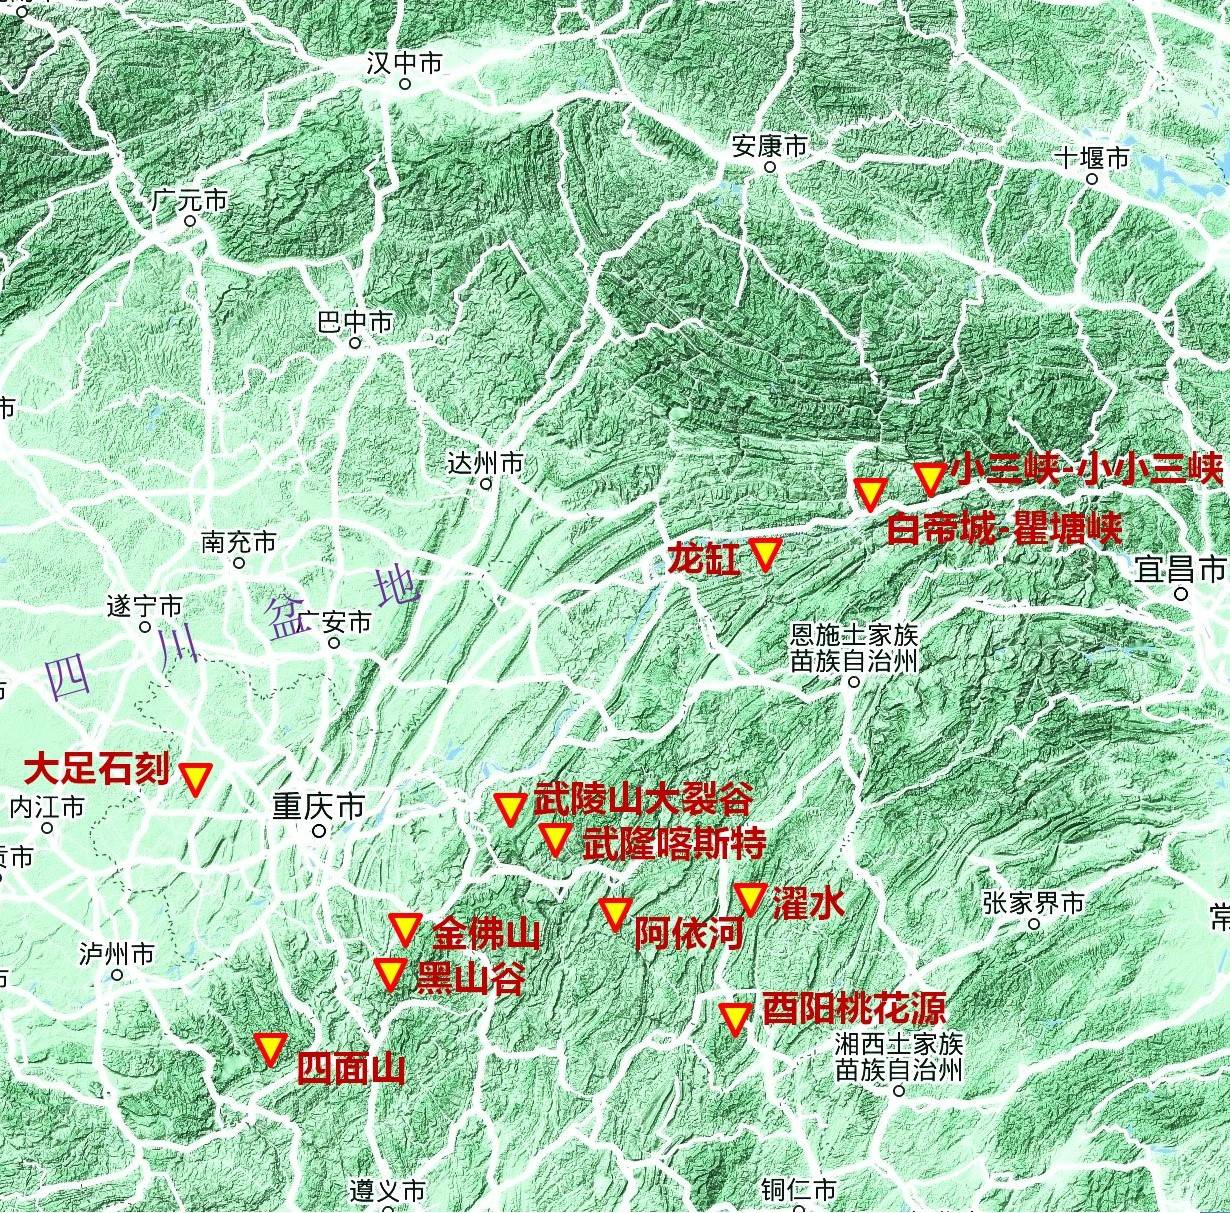 重庆:武陵山与四川盆地的神奇碰撞,造就了11处5a景区之绝美的世界奇观